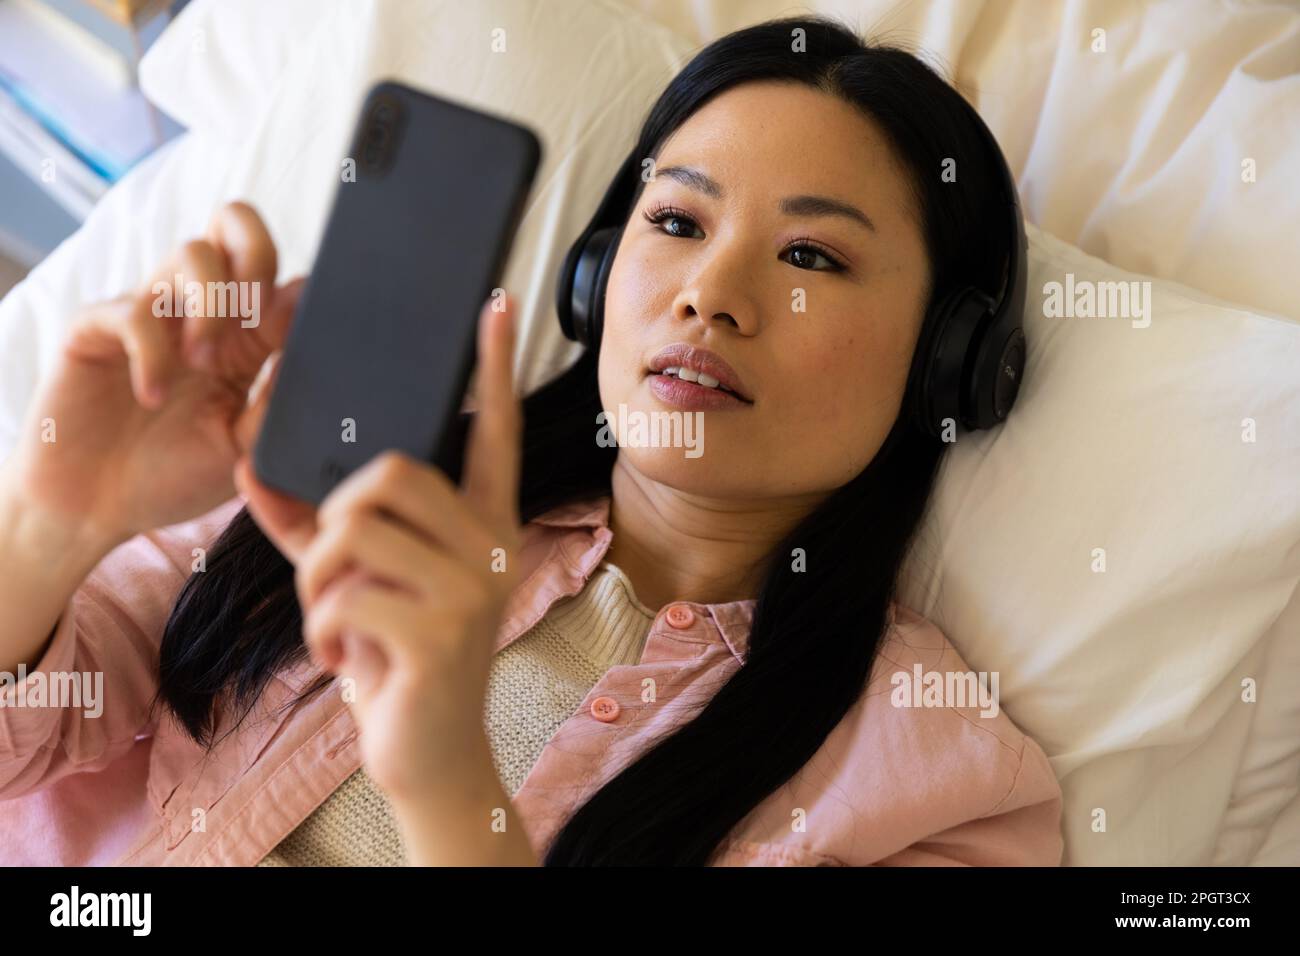 Felice donna asiatica sdraiata sul letto indossando cuffie con smartphone. Stile di vita, tempo libero, comunicazione e relax. Foto Stock